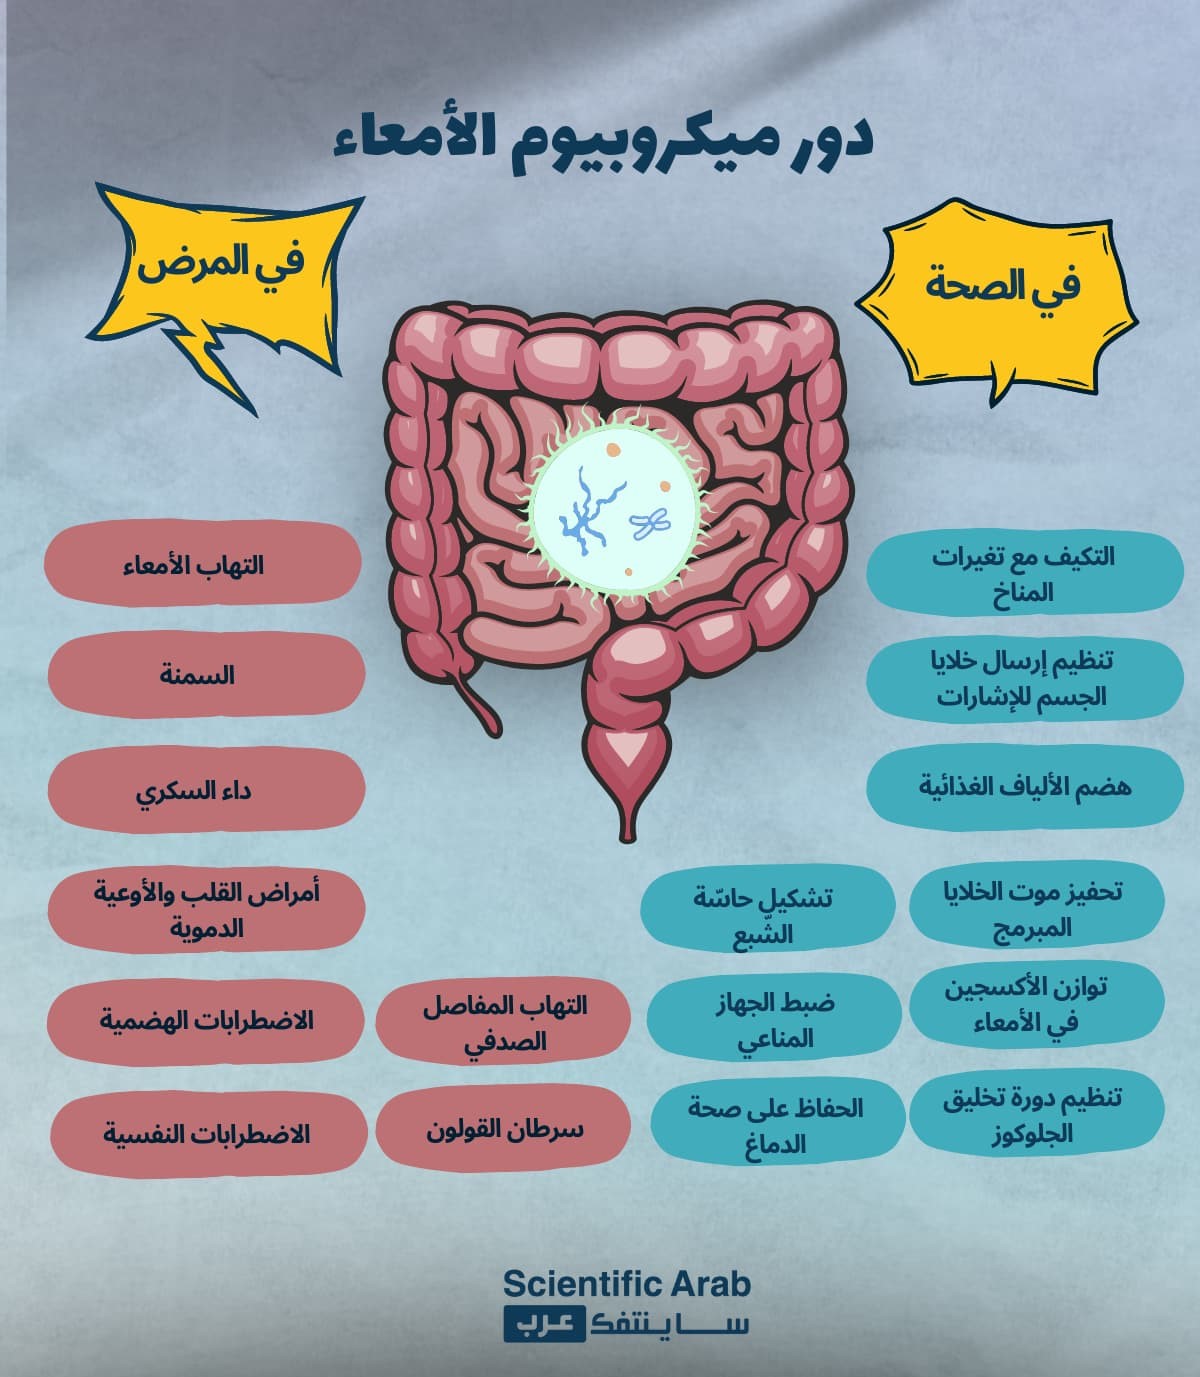 دور الميكروبيوم في الصحة والمرض - الميكروبيوم الصحي طريقك للتكيف المناخي | ساينتفك عرب 